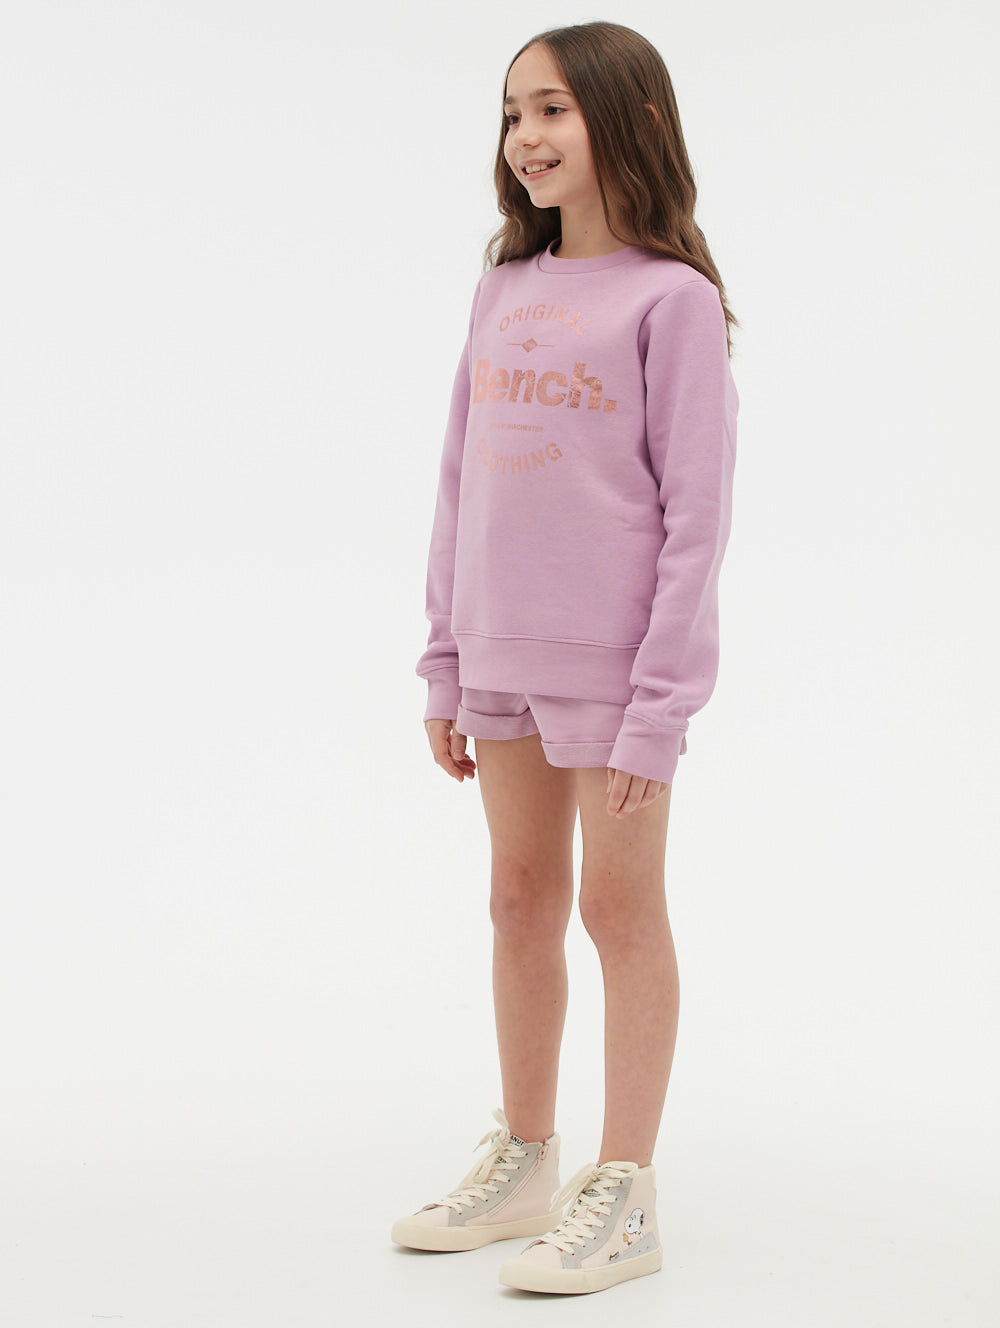 Girl Almighty Crewneck Sweatshirt – Trainwreck